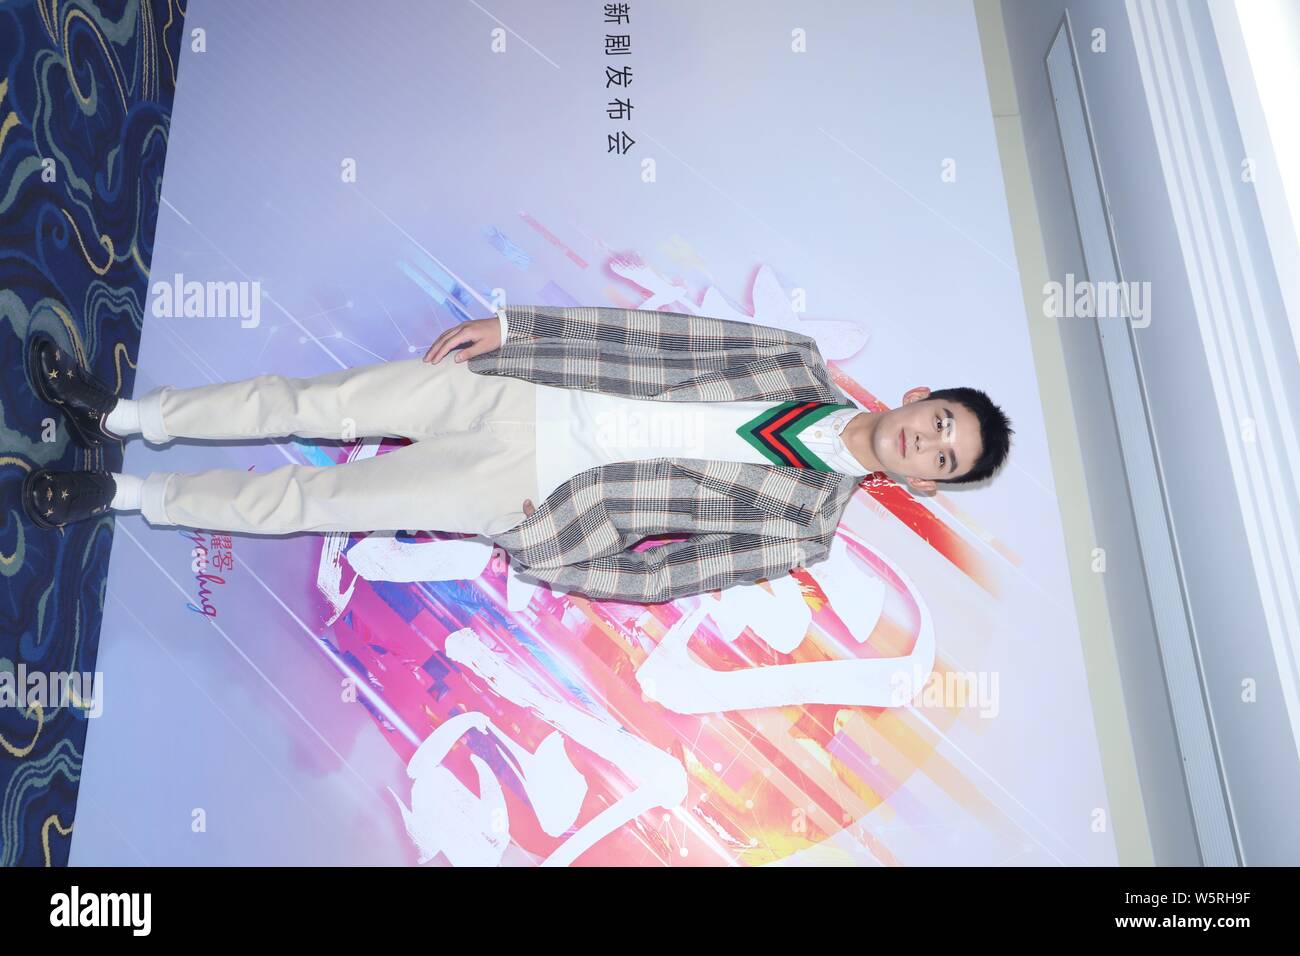 Chinesische Schauspieler Leo Wu Lei besucht eine Pressekonferenz für neue TV-Serie "Cross Fire" produziert von Shanghai Youhug Media Co. Ltd. in Shanghai, China, 11 Ju Stockfoto